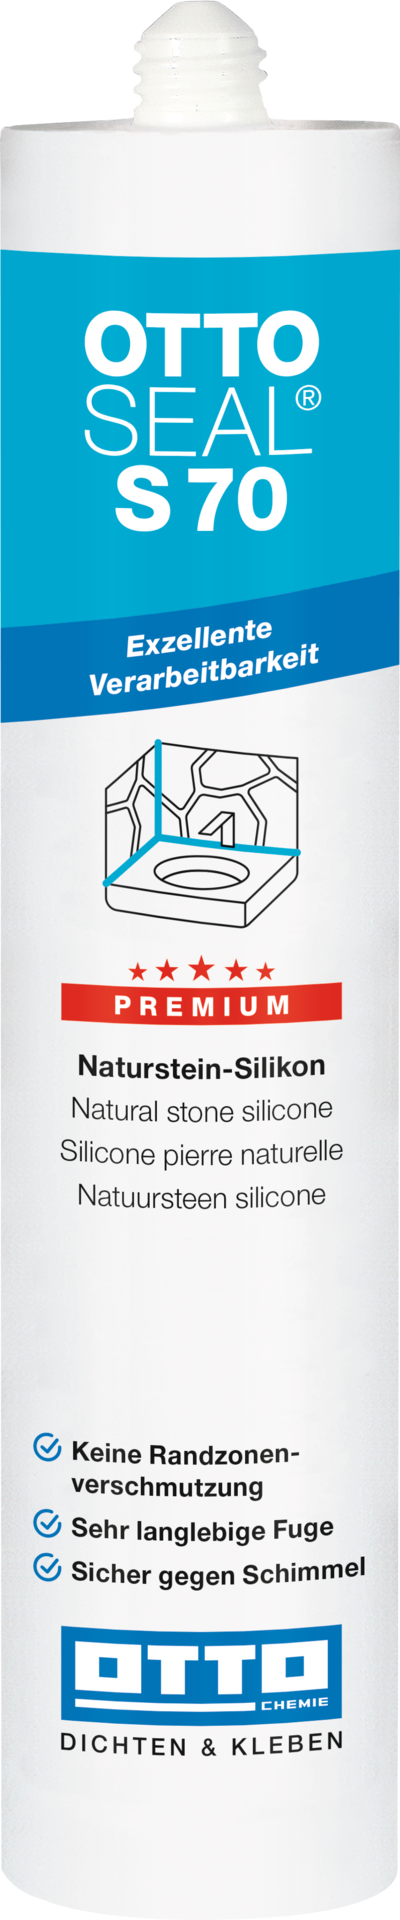 OTTOSEAL® S70 Das Premium-Naturstein-Silikon